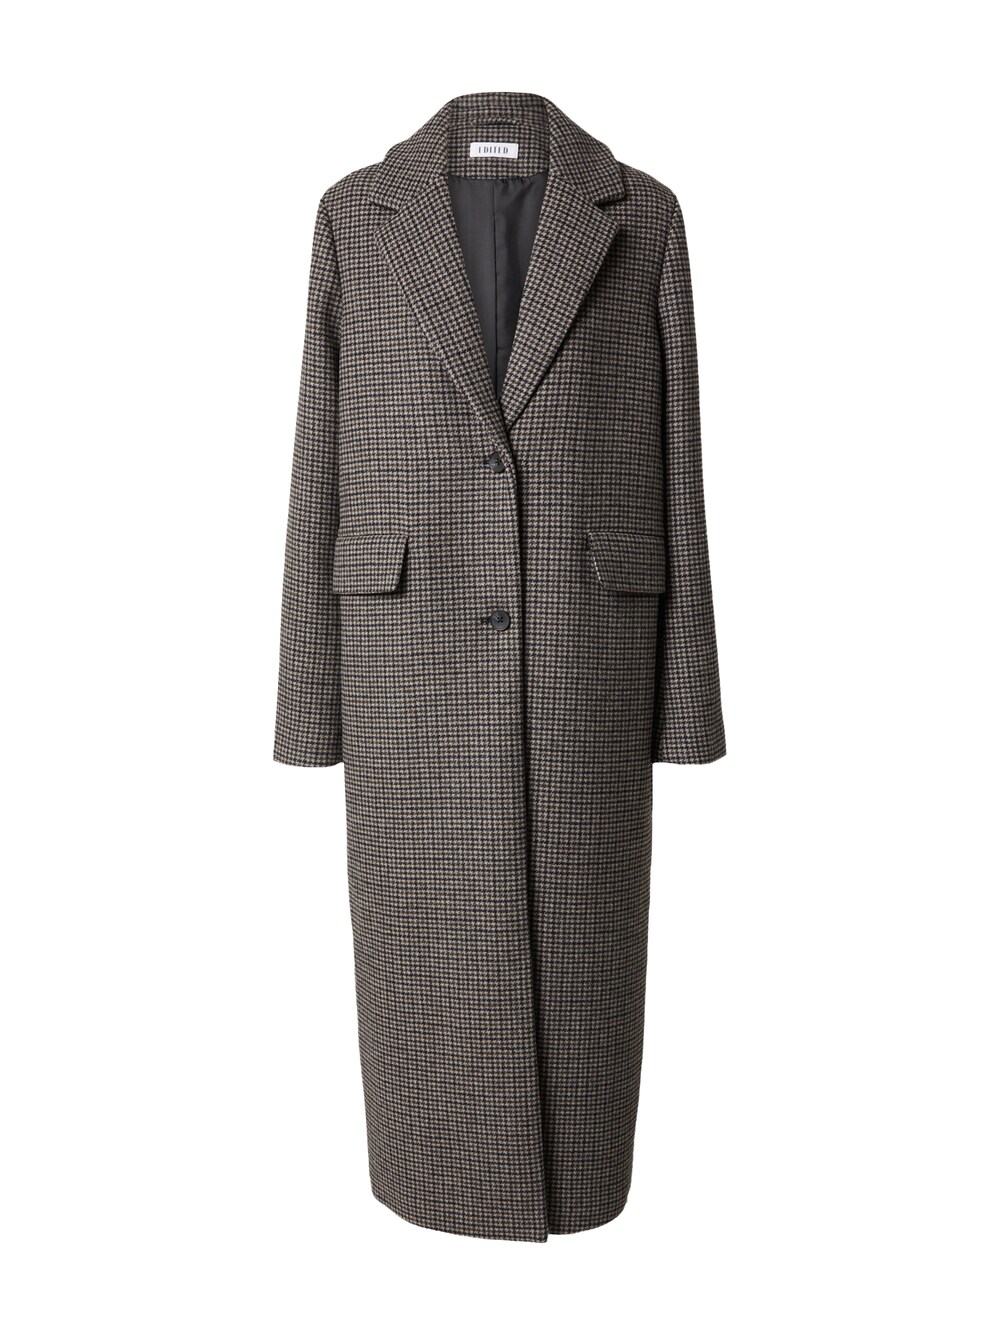 Межсезонное пальто EDITED Ninette, серый межсезонное пальто edited ekaterina пестрый серый